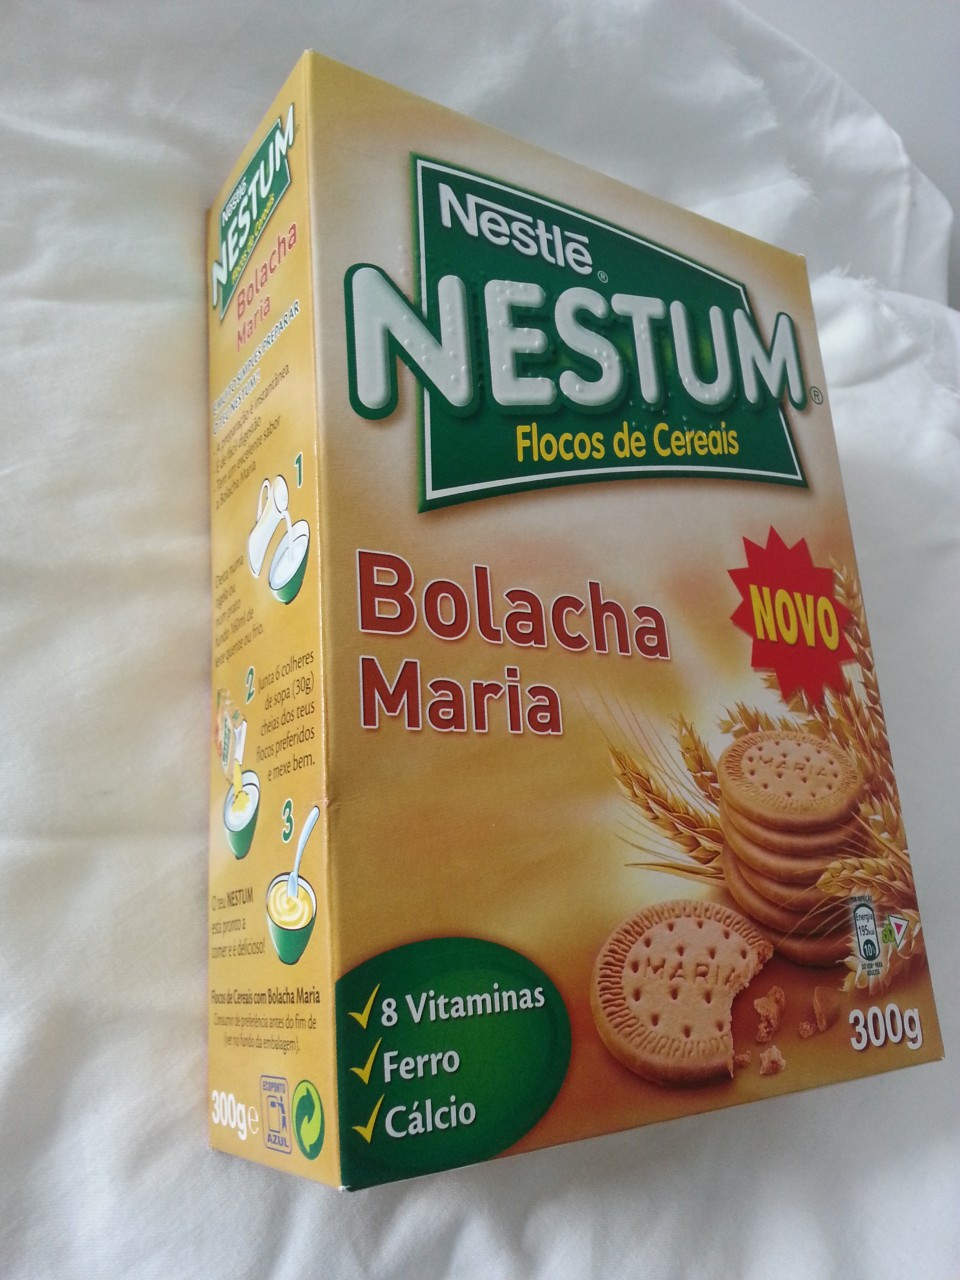 Nestle Nestum Bolacha Maria